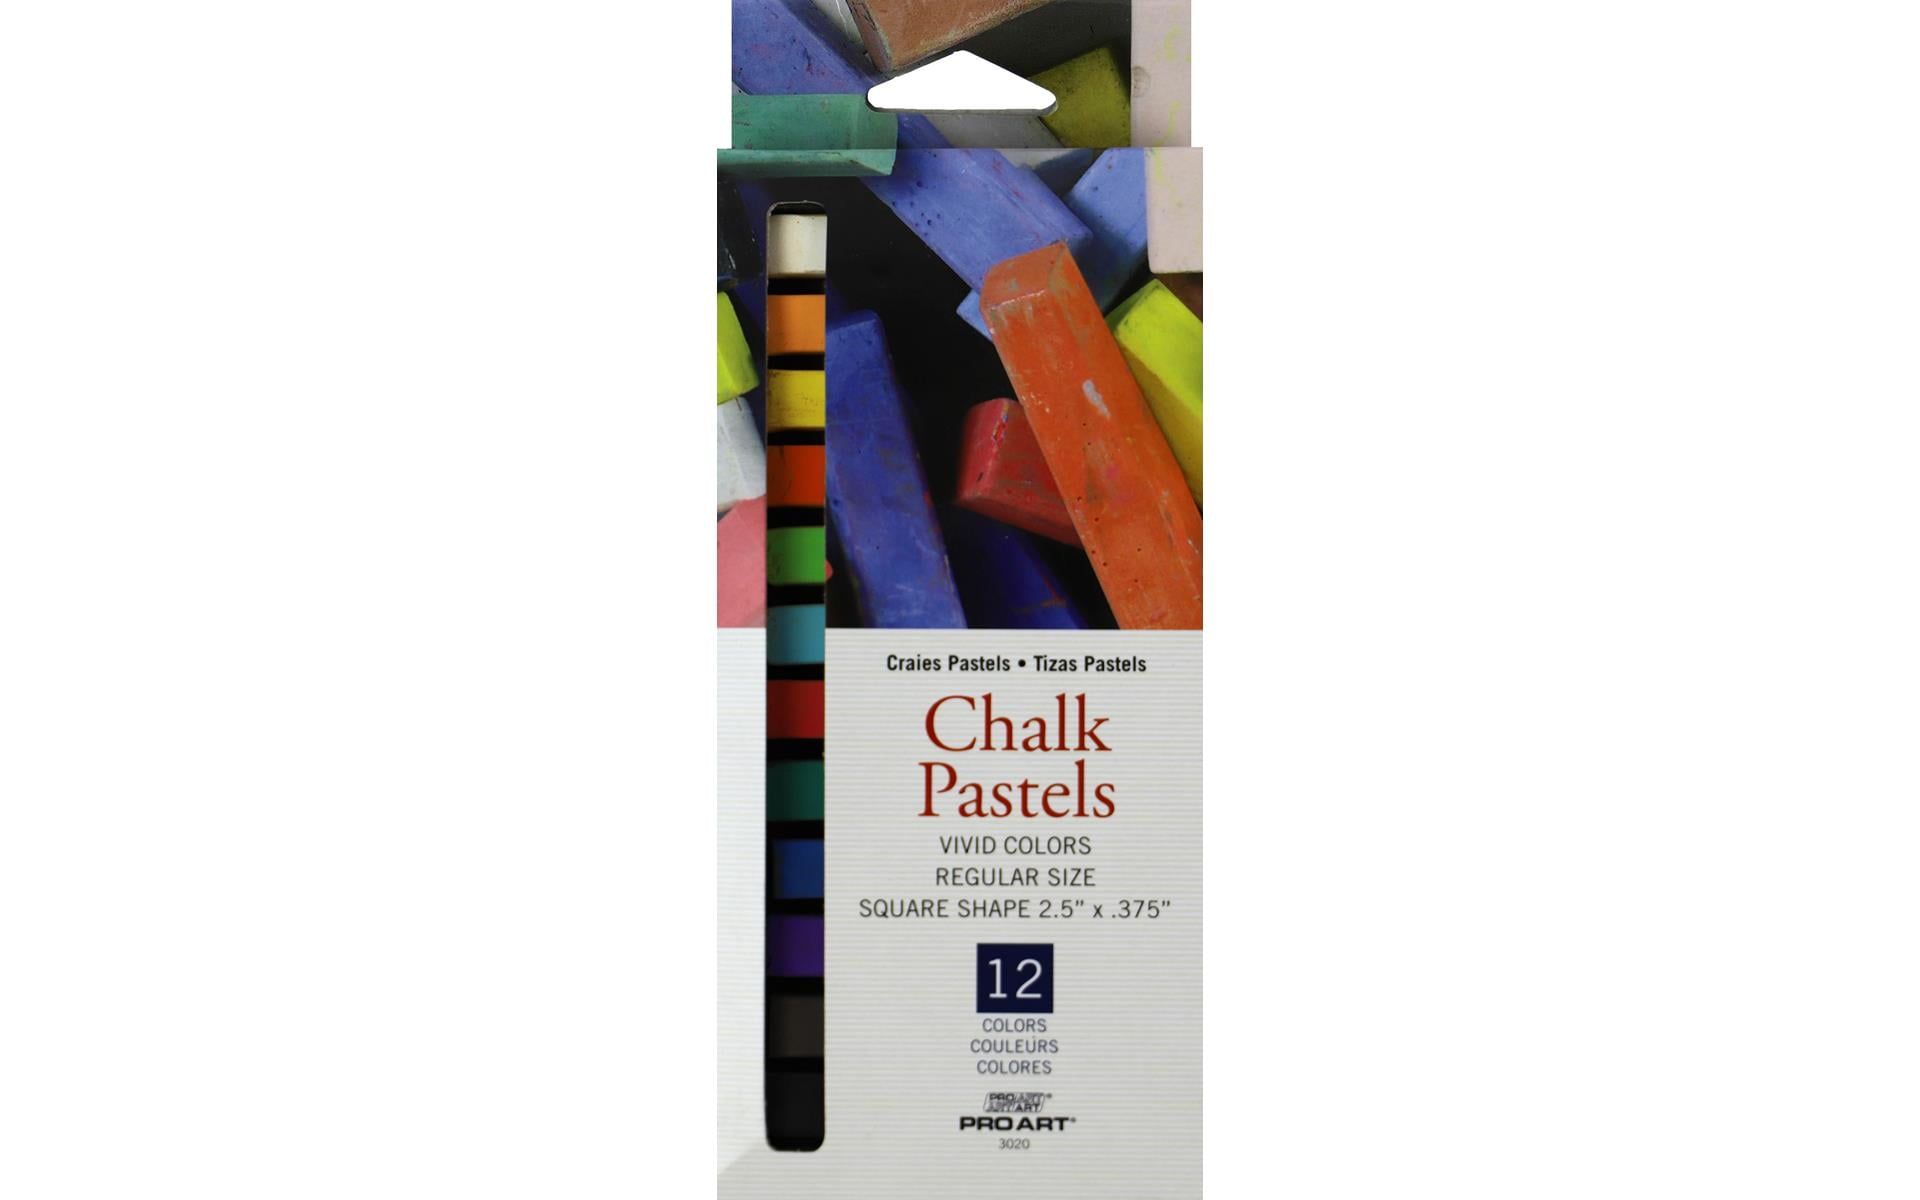 PRO ART Chalk Pastel Set, 36 Count (Pack of 1), Vivid Colors